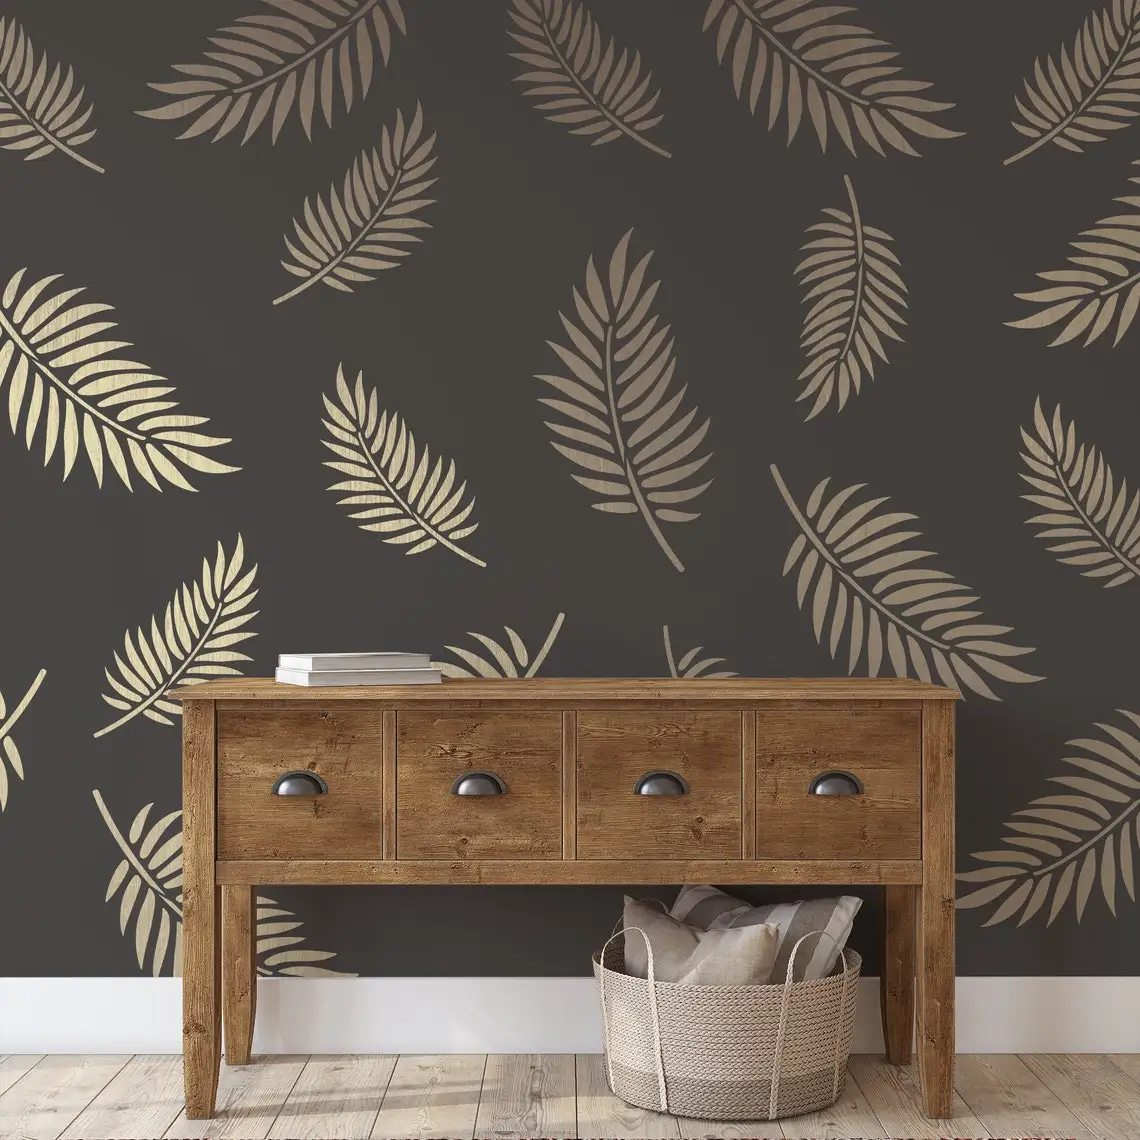   재사용 가능한 대형 손바닥 잎 패턴 벽 스텐실, 홈 페인팅 장식 